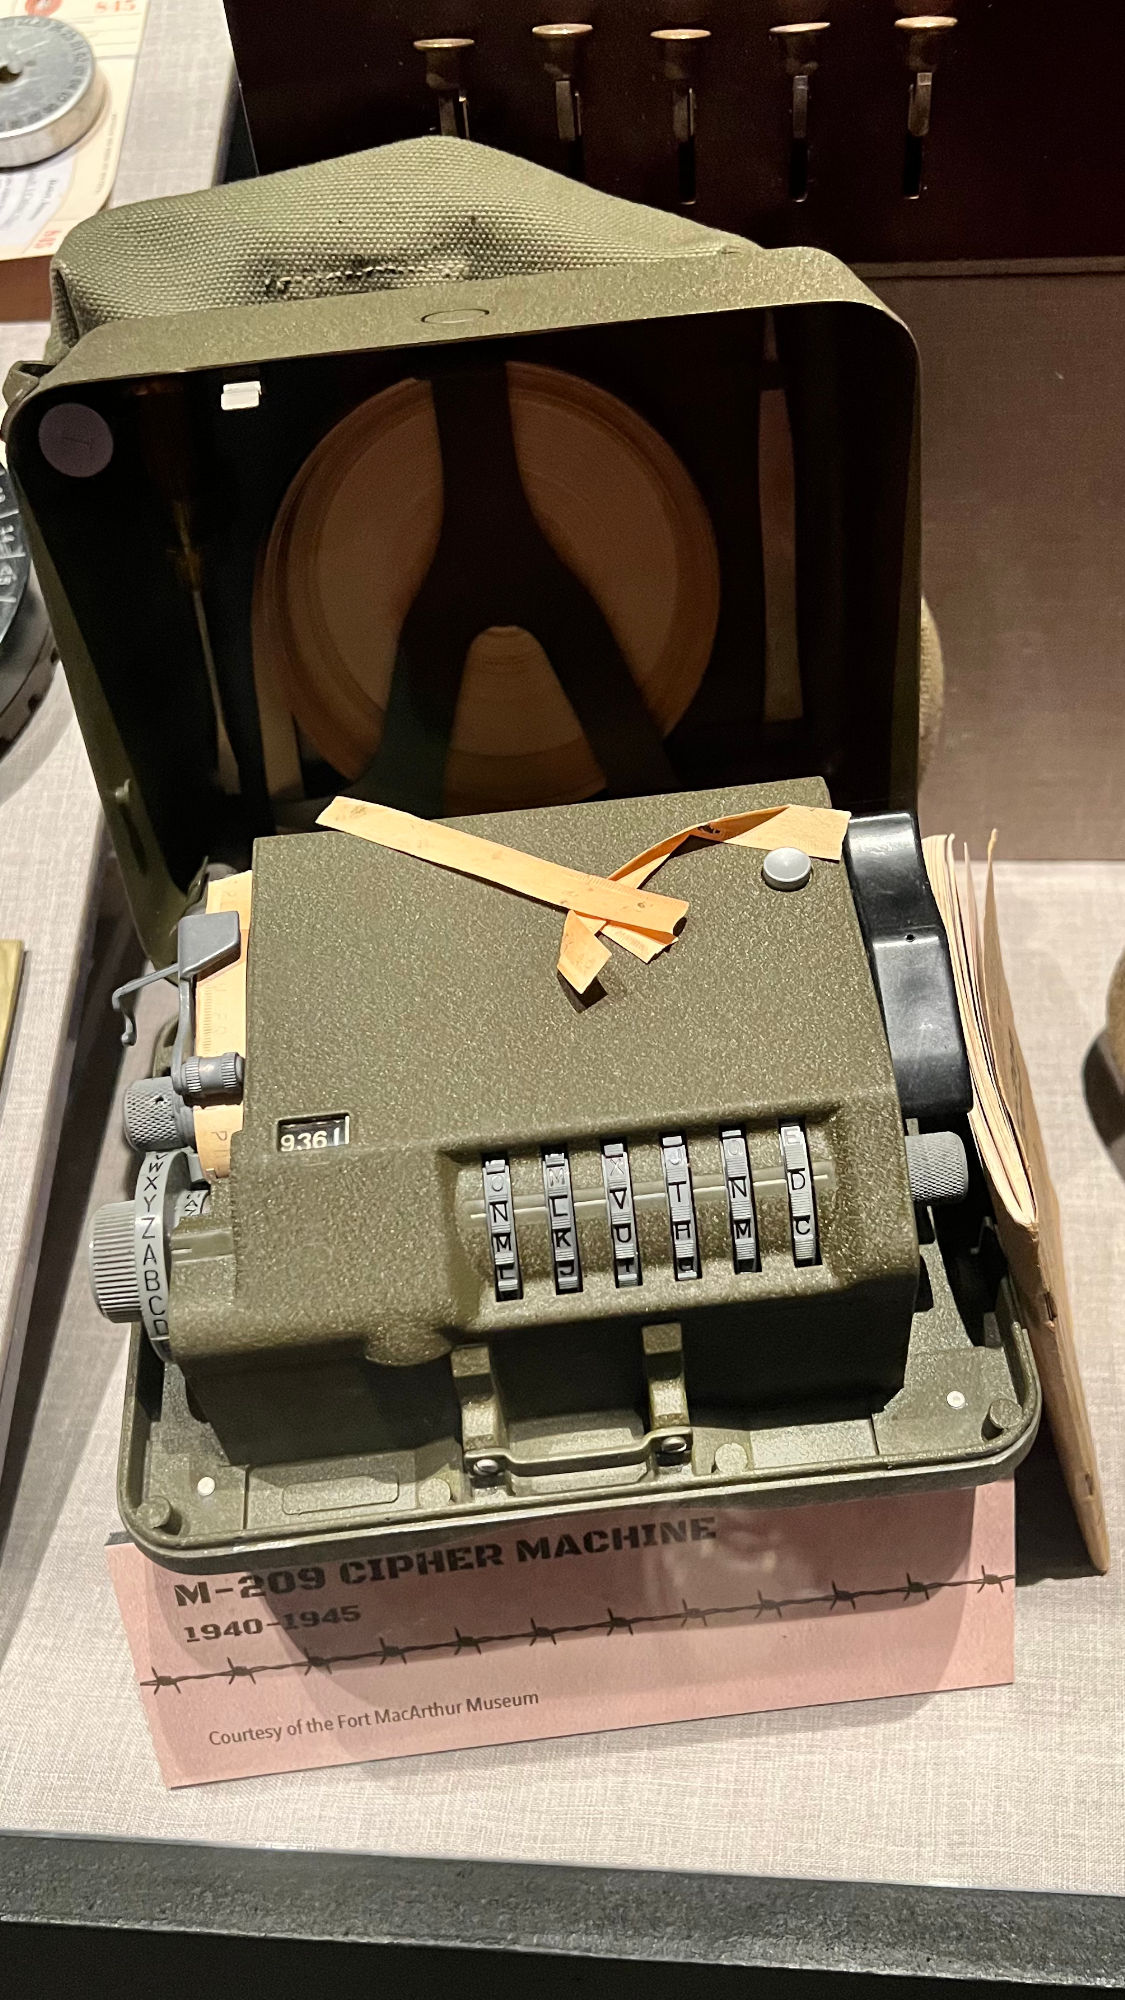 Cipher Machine M-209